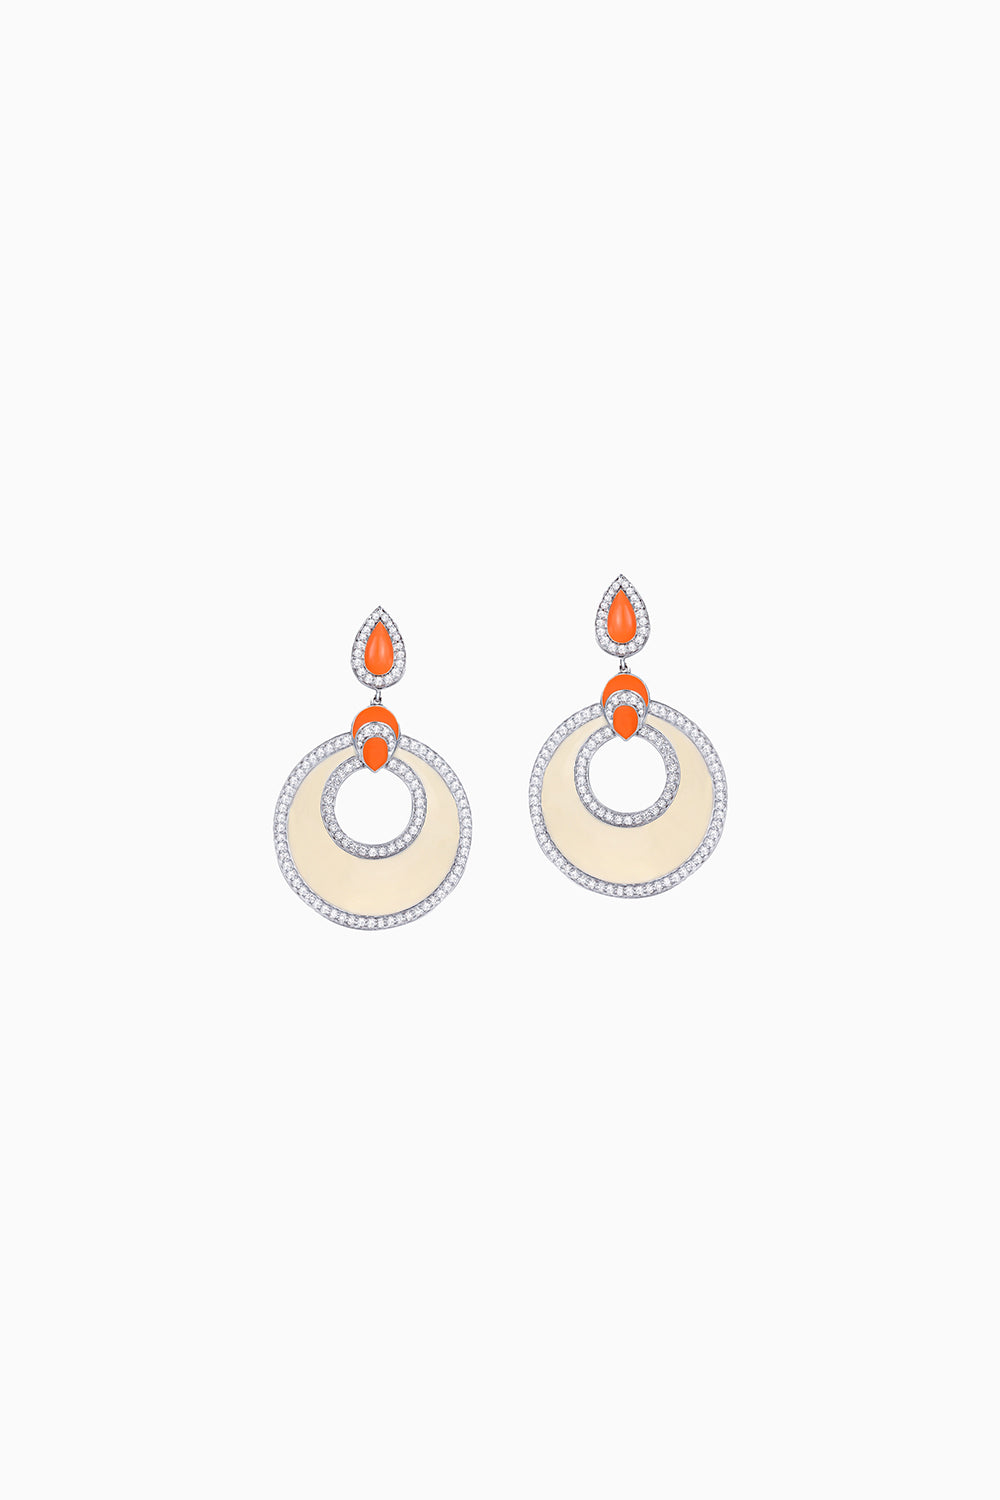 Off White, Orange Enamel and Diamond 18KT Gold Earrings